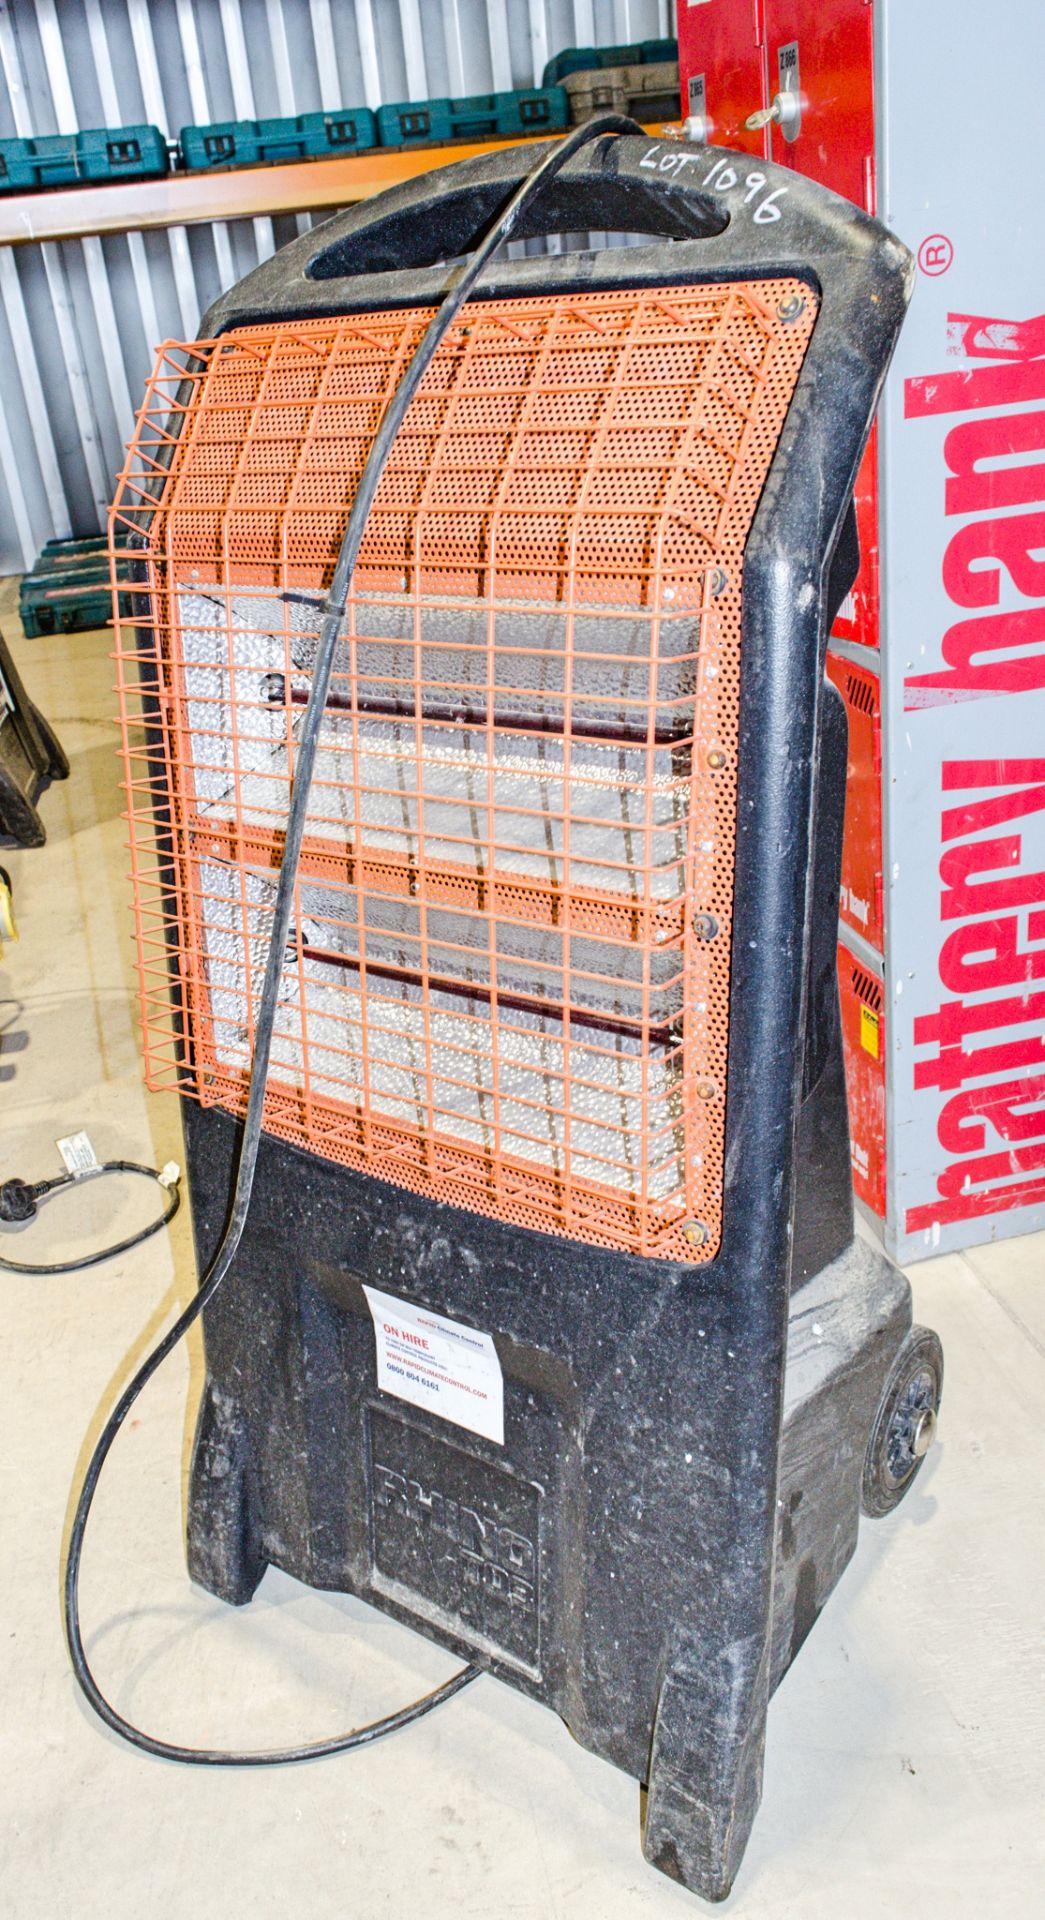 Rhino TQ3 240 volt infra red heater